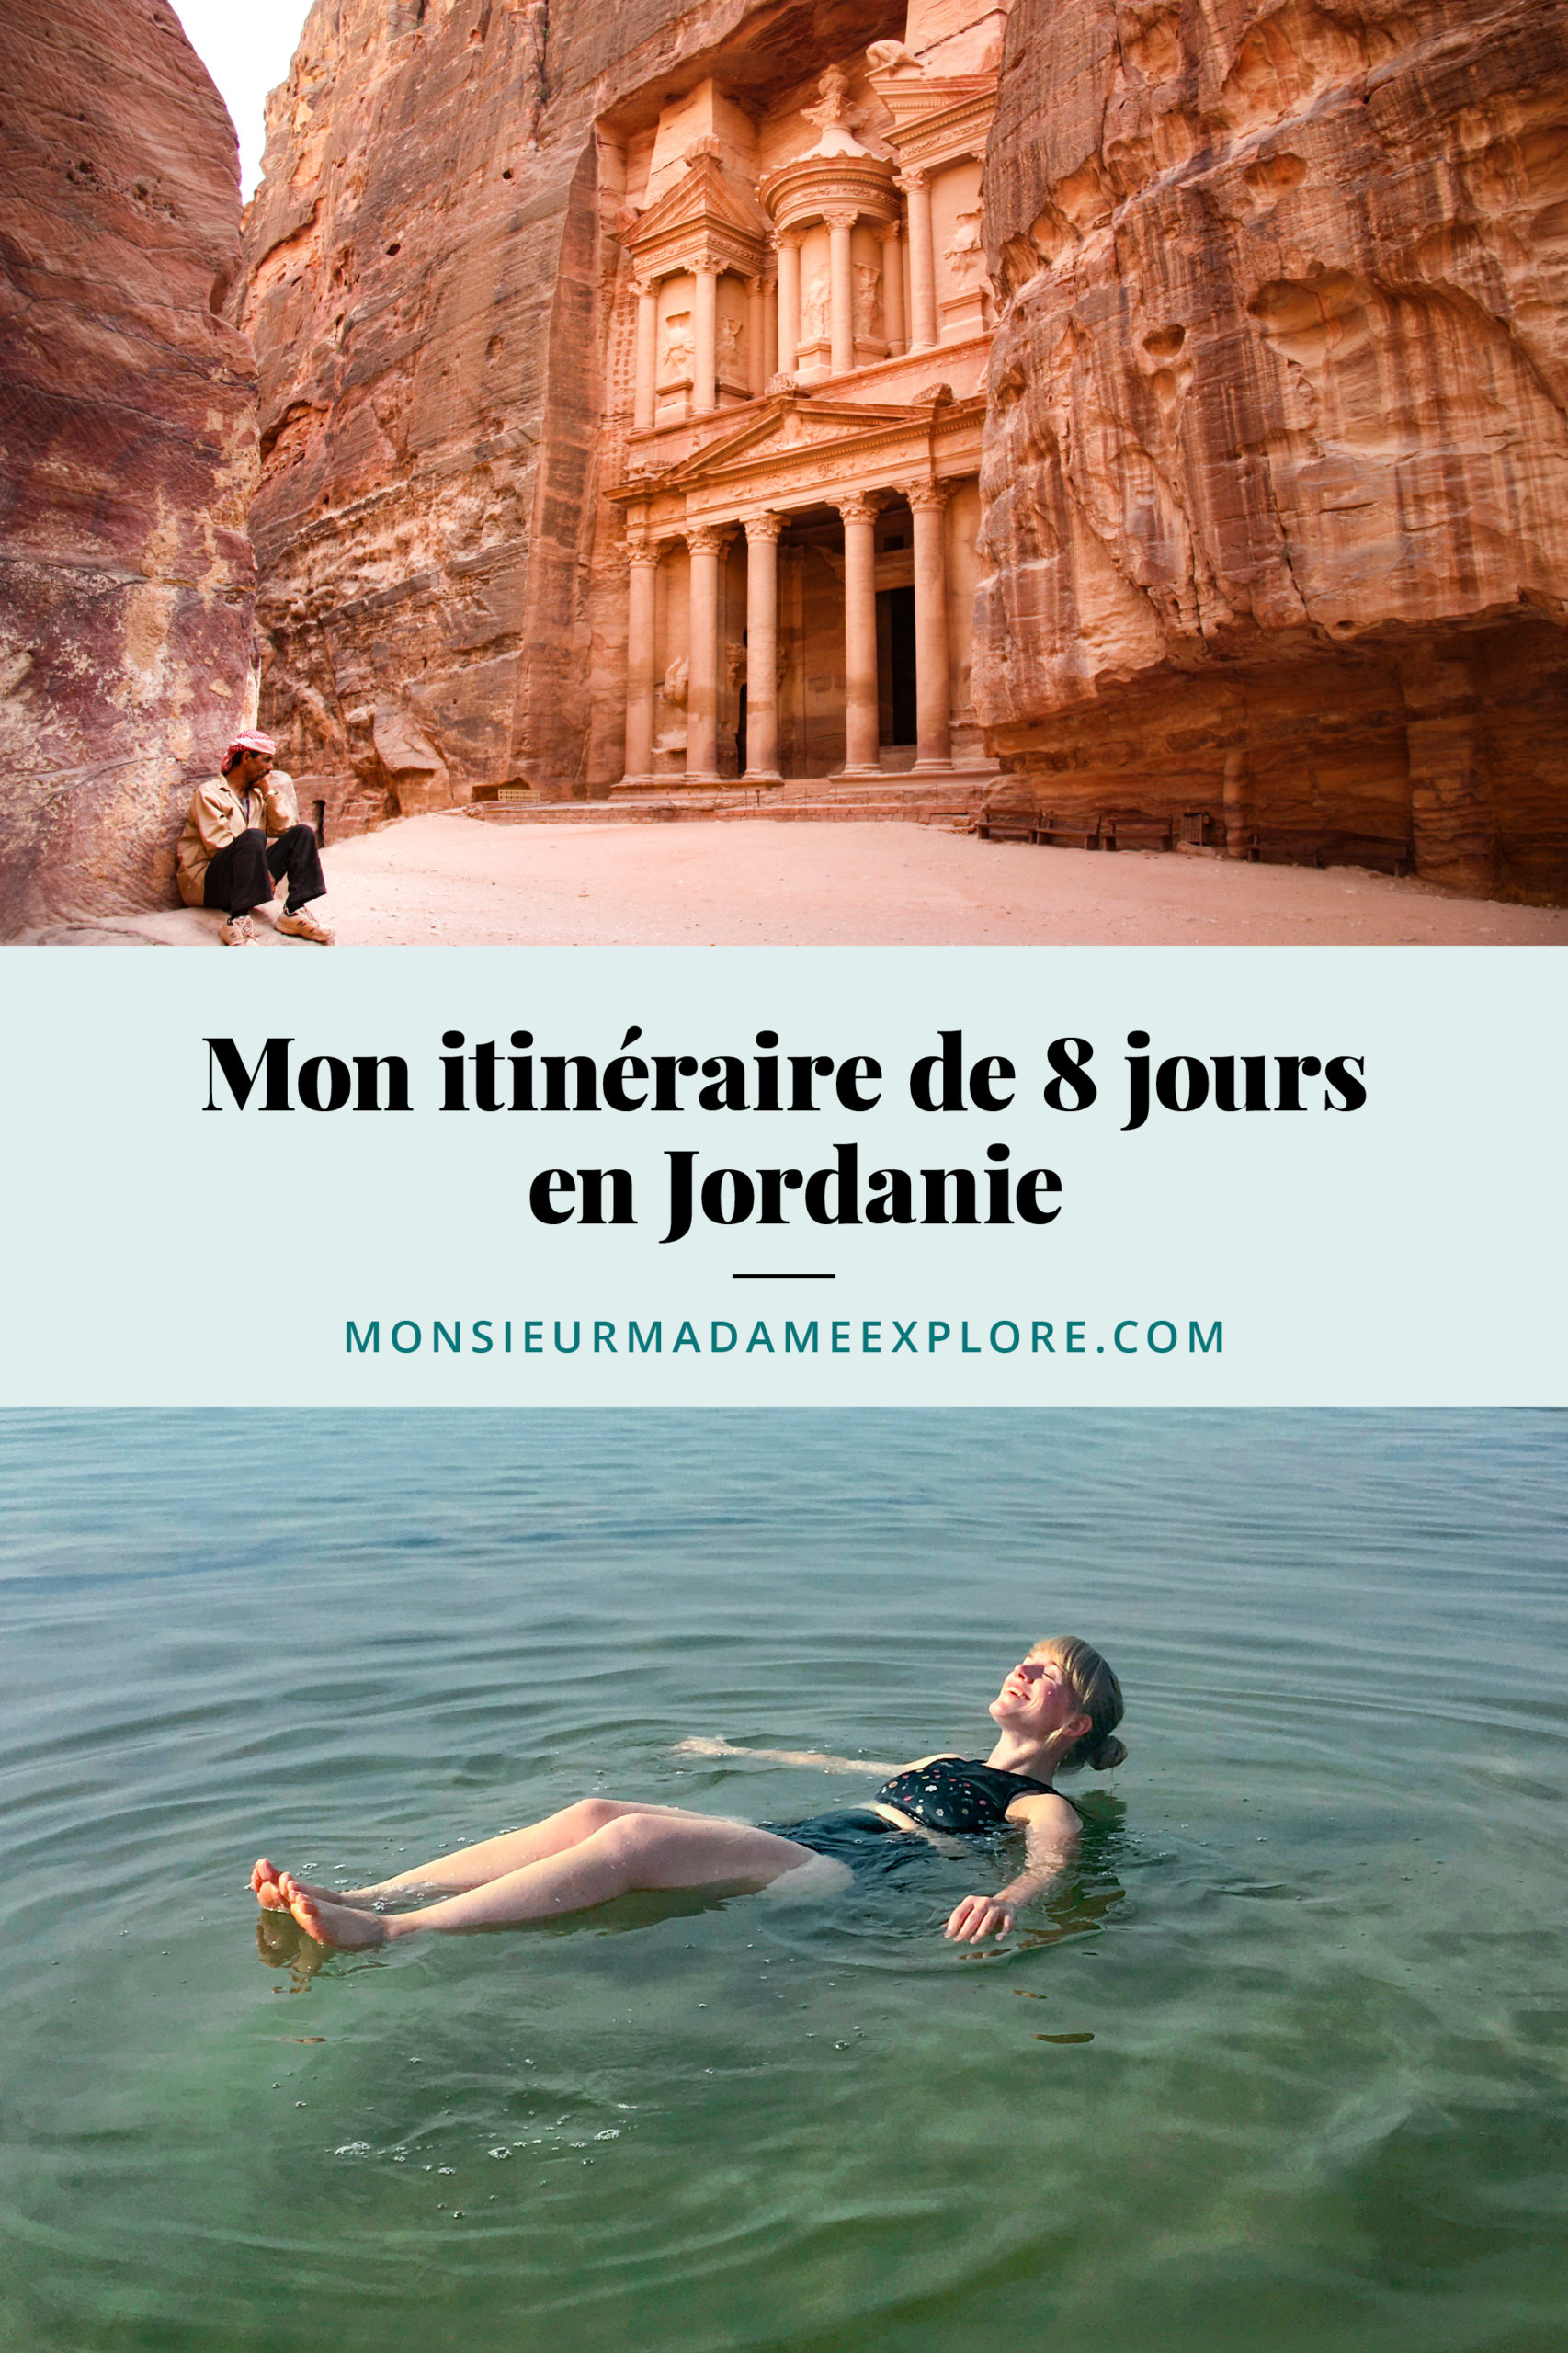 Mon itinéraire de 8 jours en Jordanie, Monsieur+Madame Explore, Blogue de voyage, Jordanie / My 8-day itinerary in Jordan, Jordan